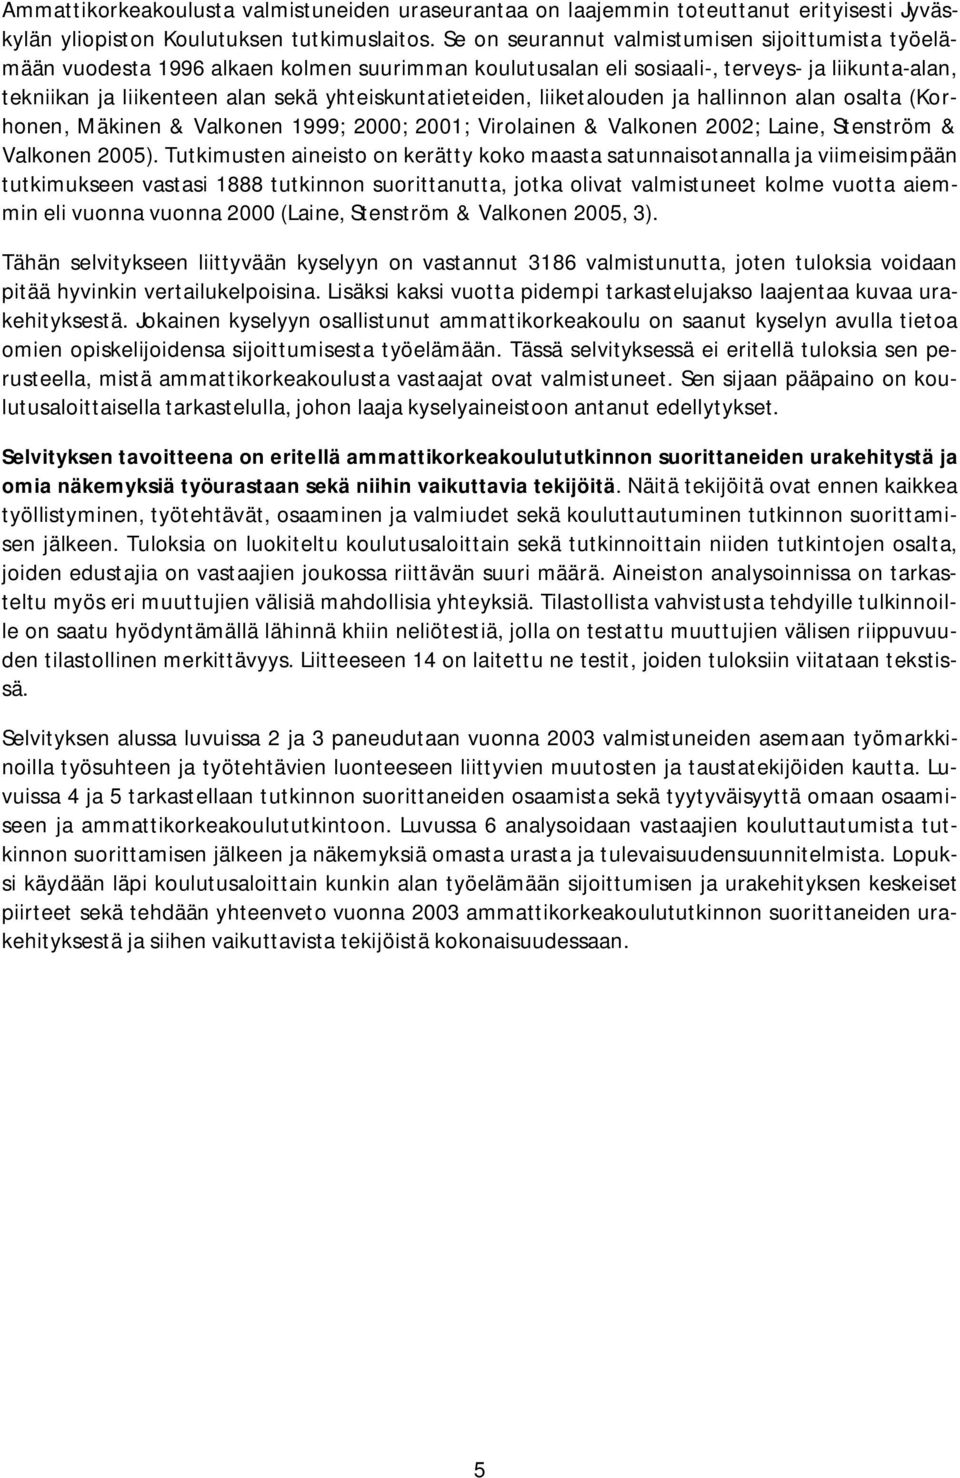 yhteiskuntatieteiden, liiketalouden ja hallinnon alan osalta (Korhonen, Mäkinen & Valkonen 1999; 2000; 2001; Virolainen & Valkonen 2002; Laine, Stenström & Valkonen 2005).